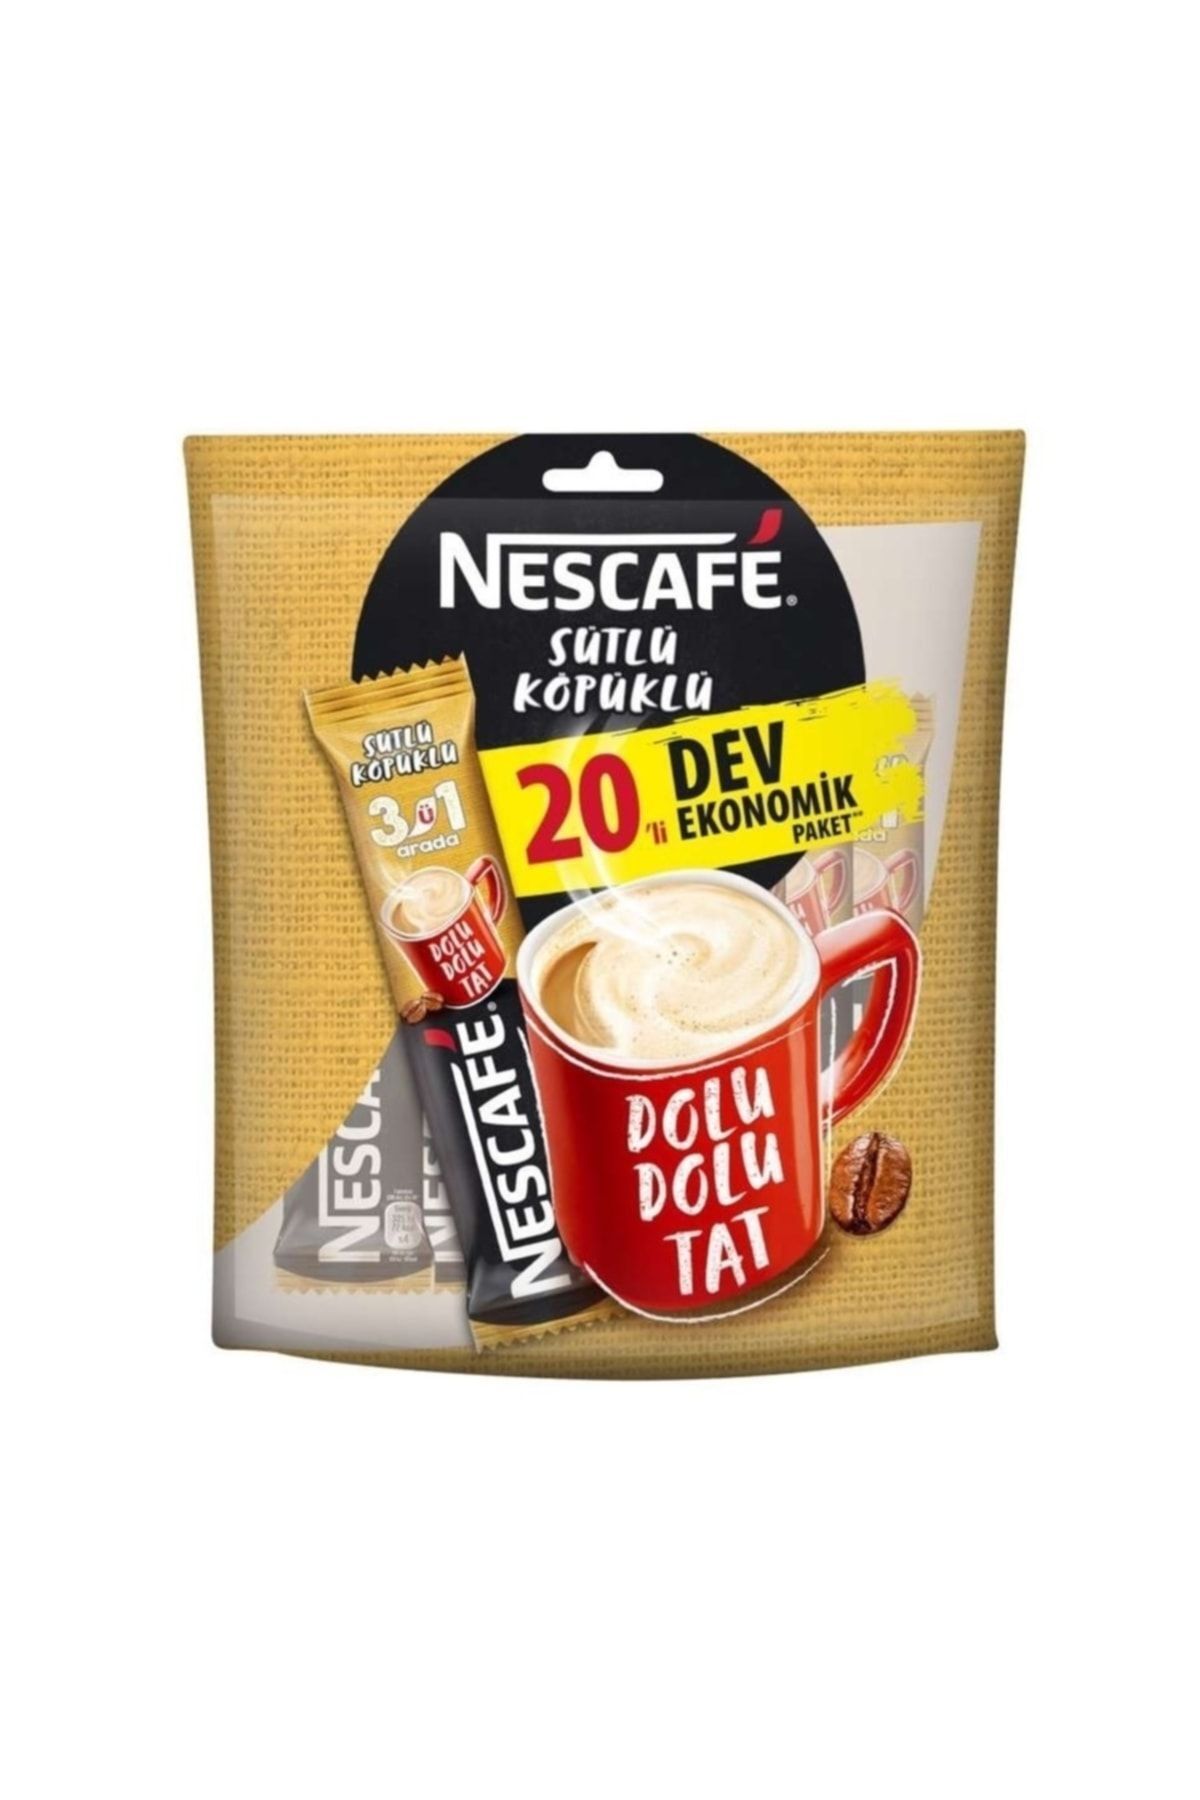 Nescafe Sütlü Köpüklü 3'ü 1 Arada 20'li Dev Ekonomik Paket